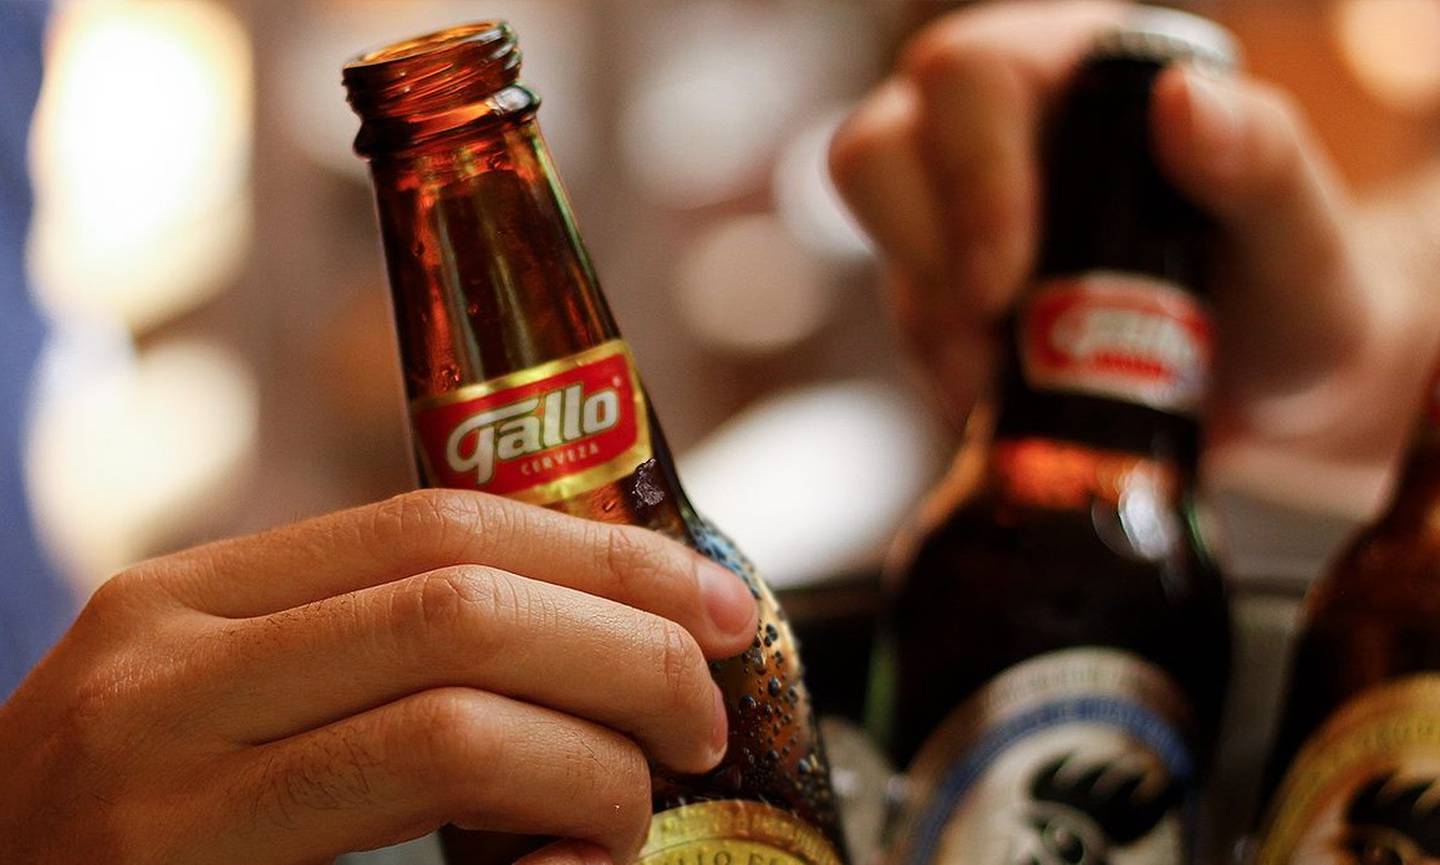 Gallo es una de las cervezas más antiguas de Centroamérica.dfd